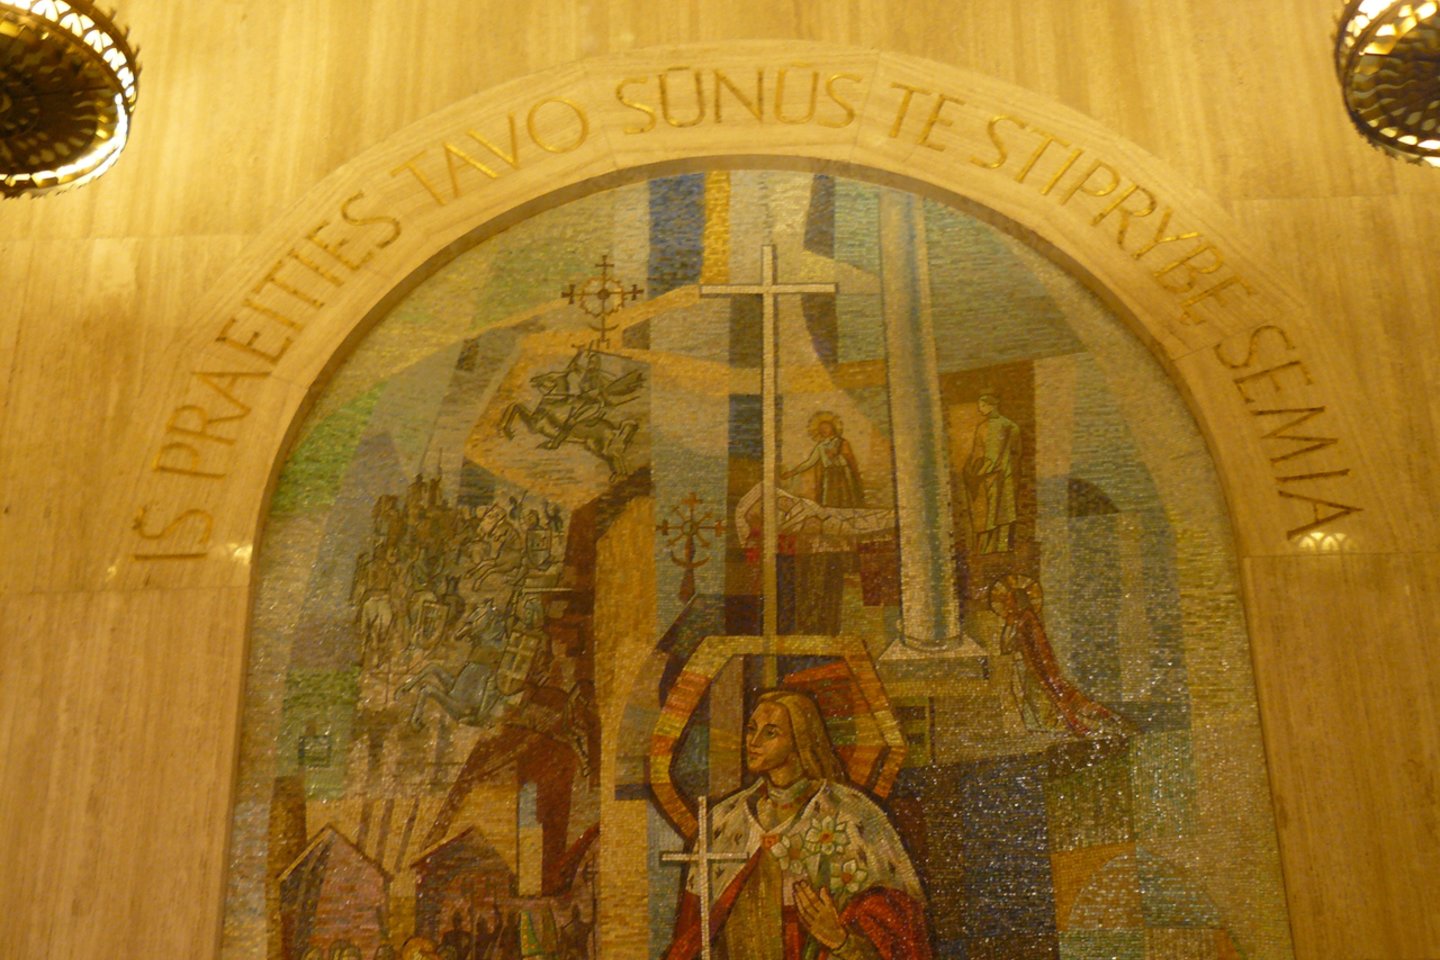  Katalikų bazilikoje Vašingtone esančioje lietuviškoje koplyčioje yra daug su mūsų šalimi susijusių kūrinių. Juose – Mindaugo krikštas, Kryžių kalnas, Vytis, Trakų, Pažaislio ir Vilniaus vaizdai.<br>R.Stankevičiūtės nuotr.